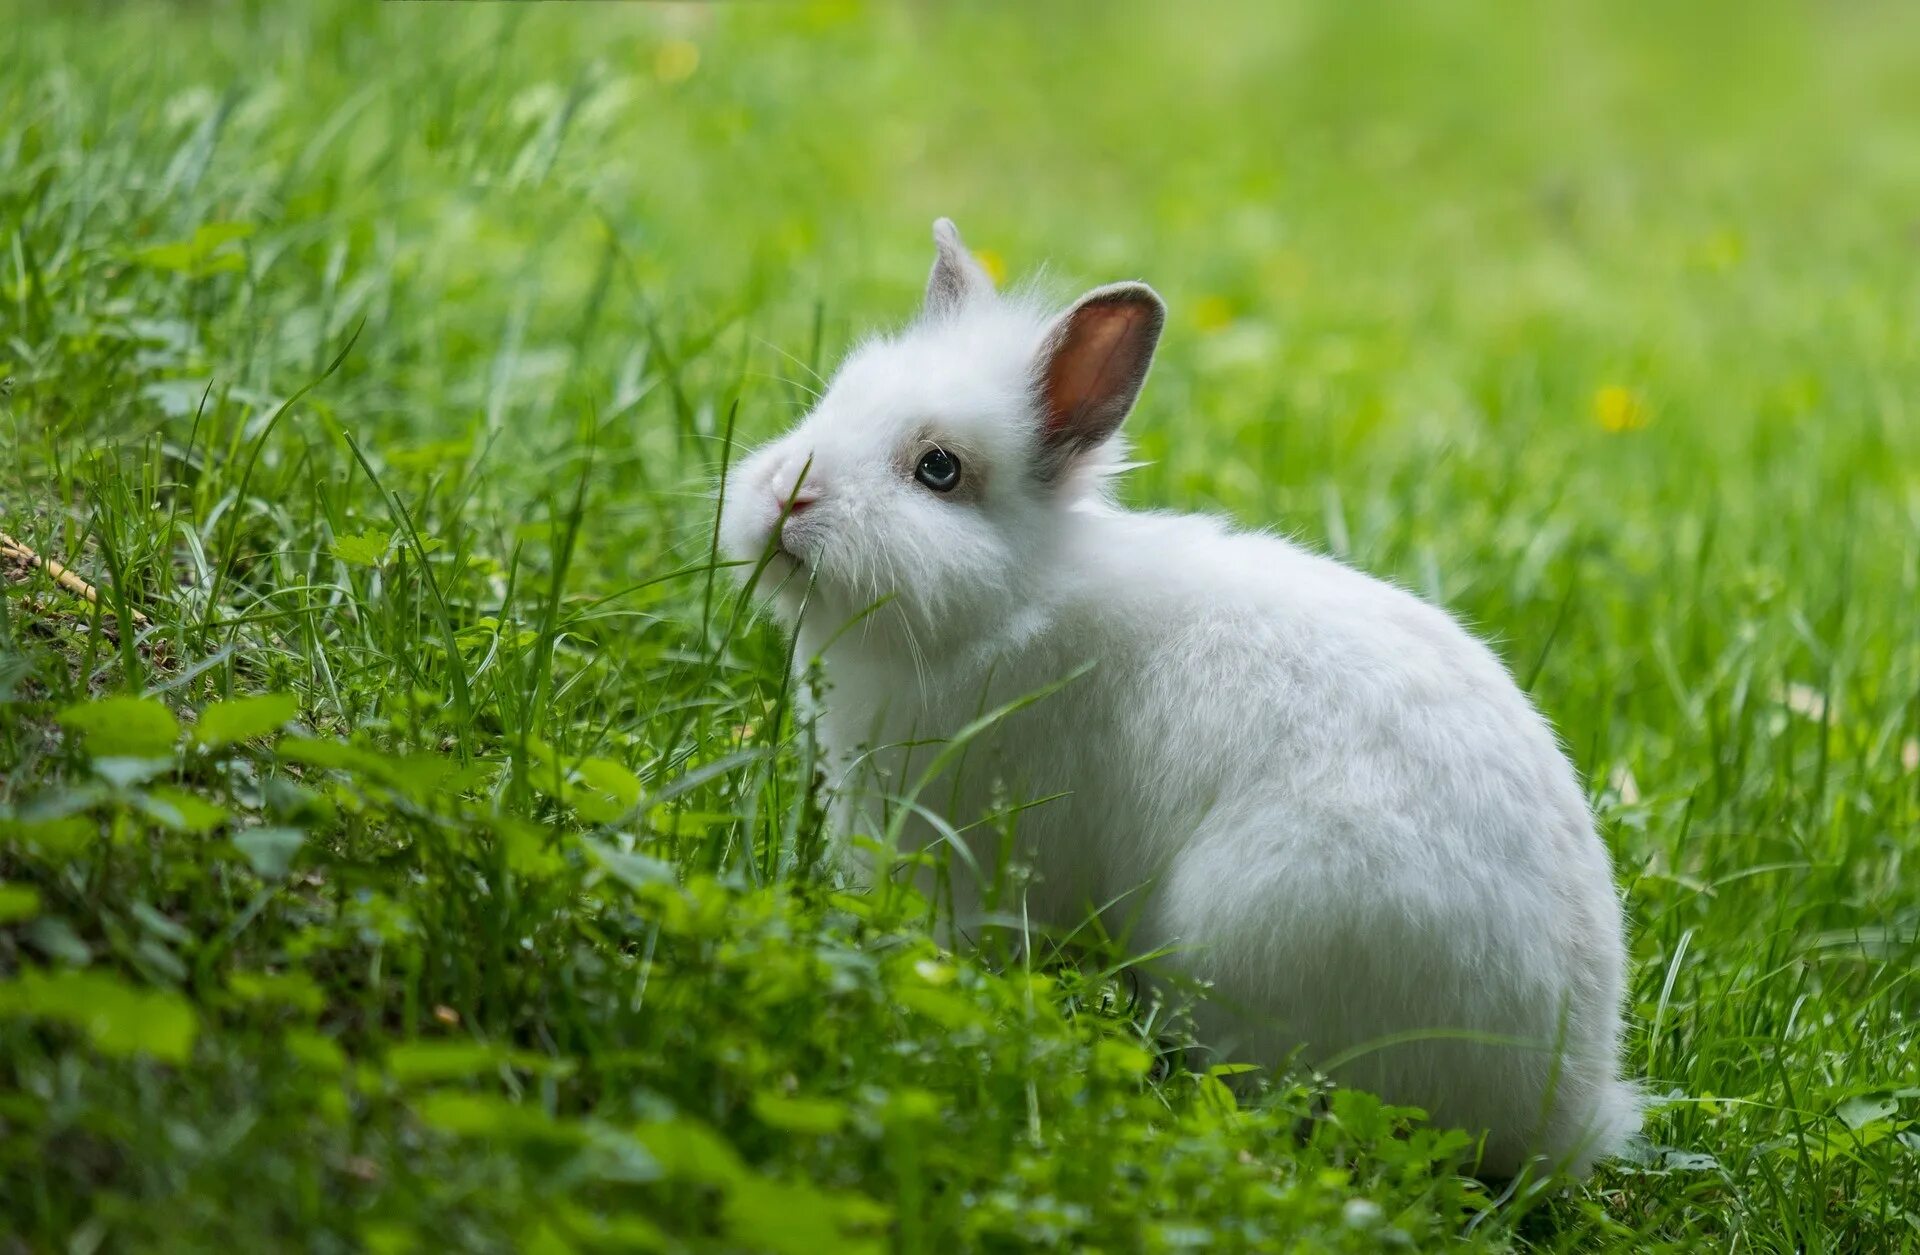 Grass animals. Кролик в траве. Кролик на травке. Хомяки кролики на фоне травы. Кролик с травой в зубах.